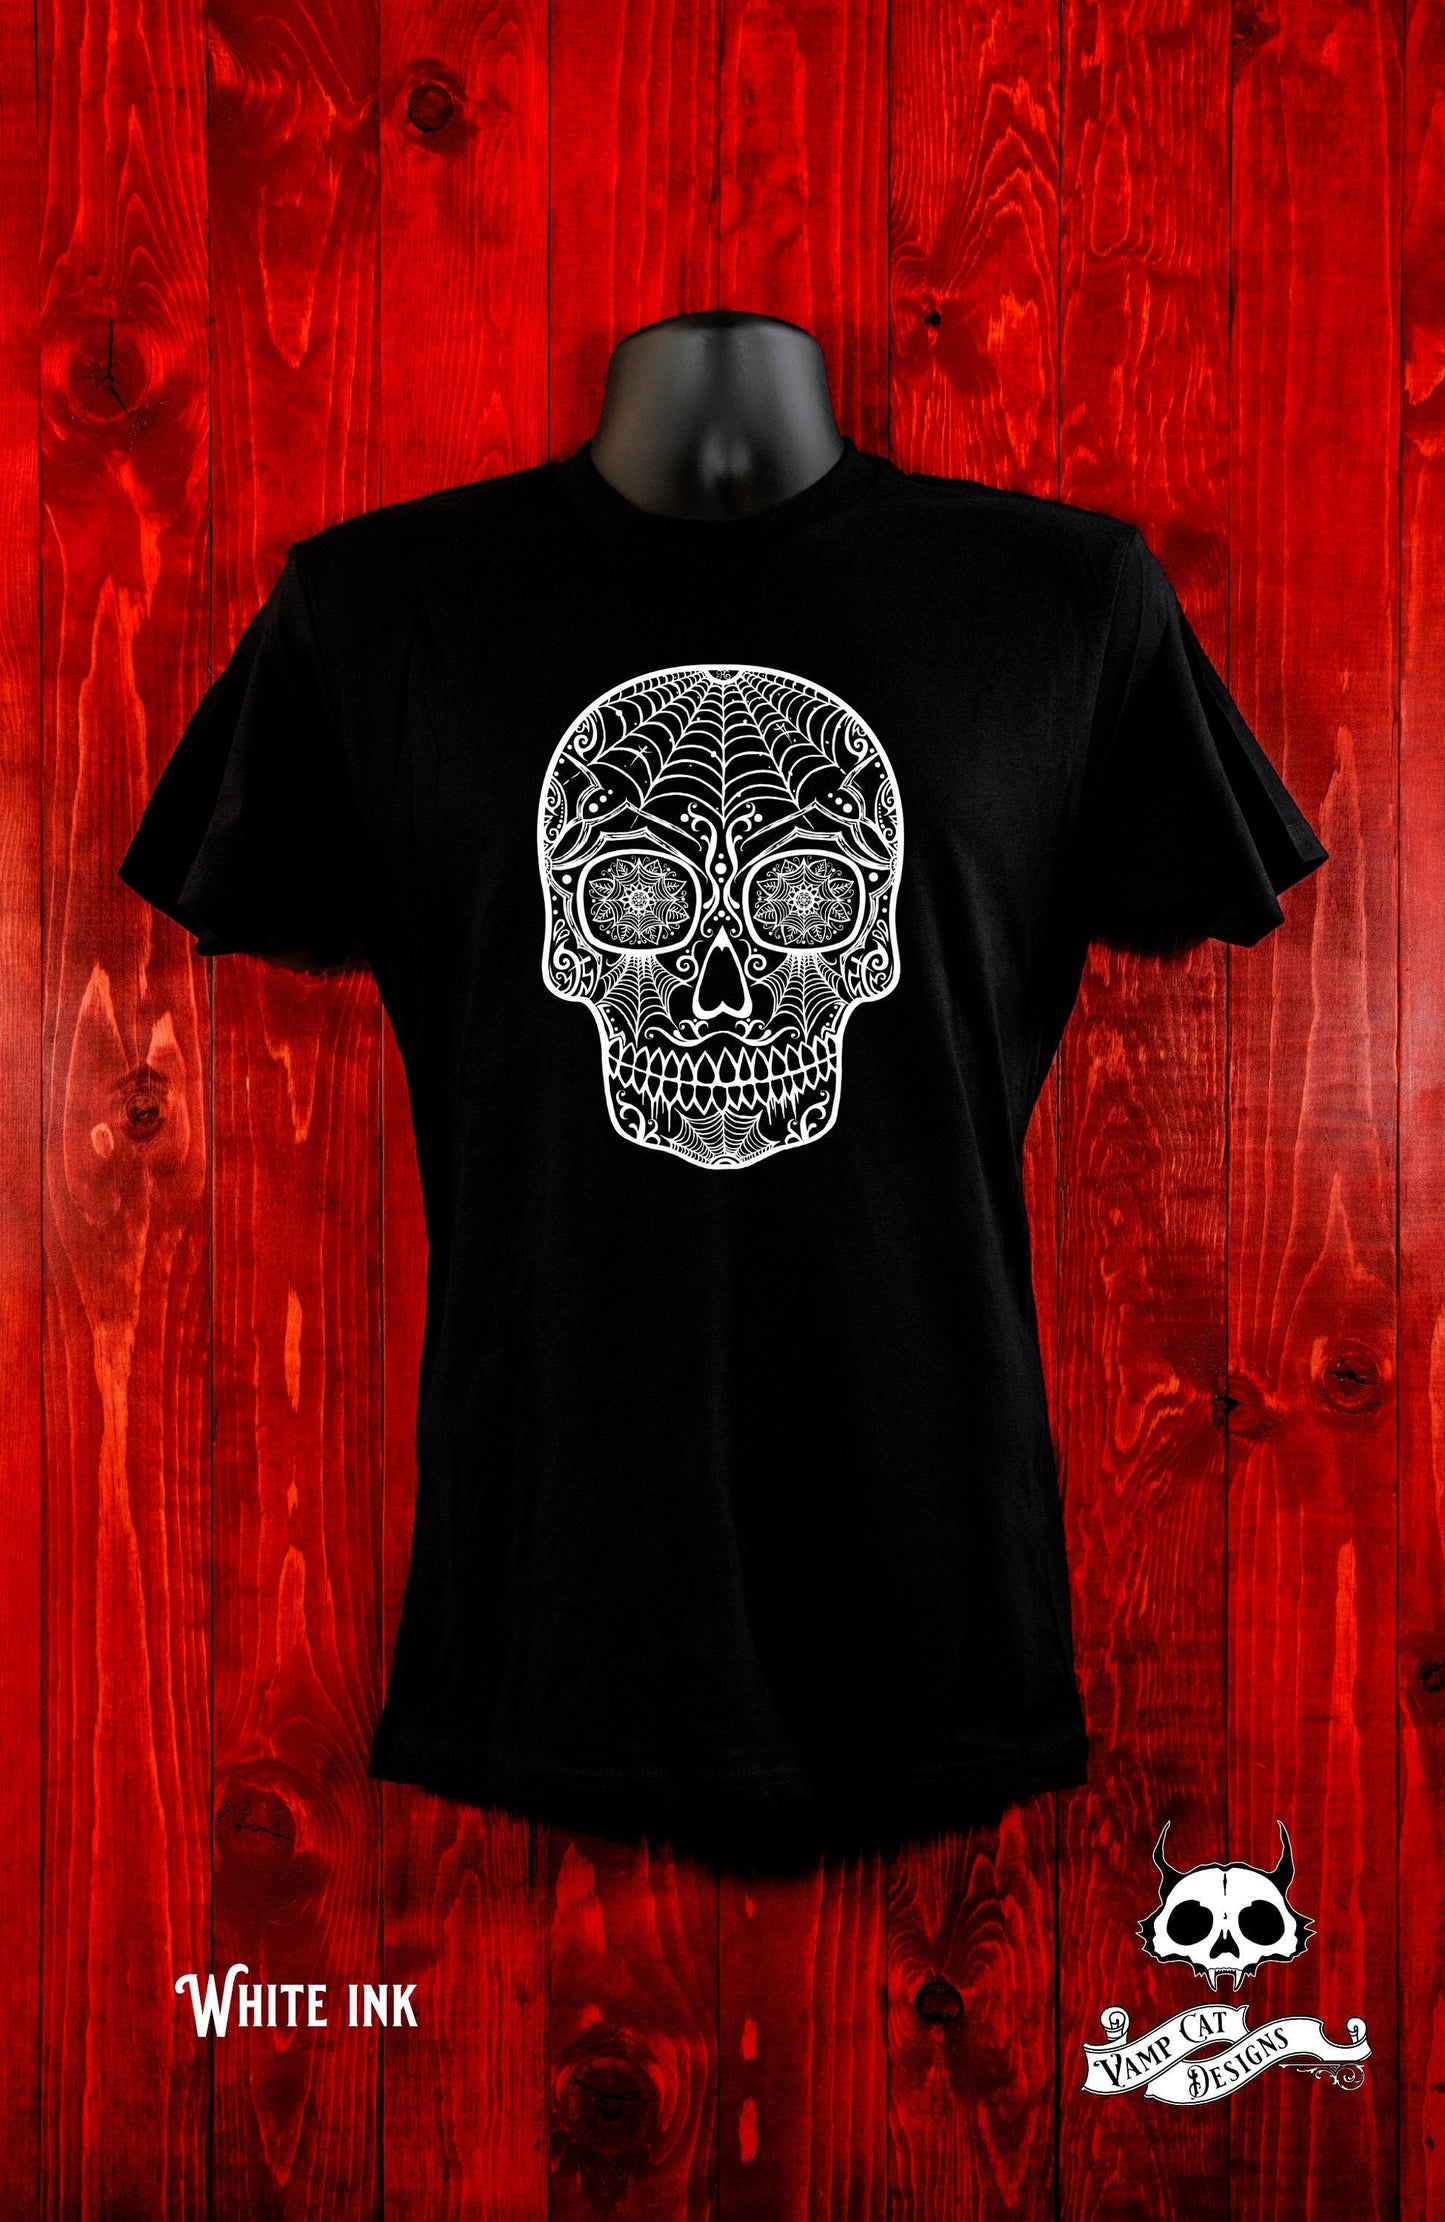 Dia De Los Muertos Shirt-Spider Sugar Skull-Unisex Tee-Men and Women's Tee-Calavera-Day of The Dead Skull Tee-Arachnid lovers-Large Skull